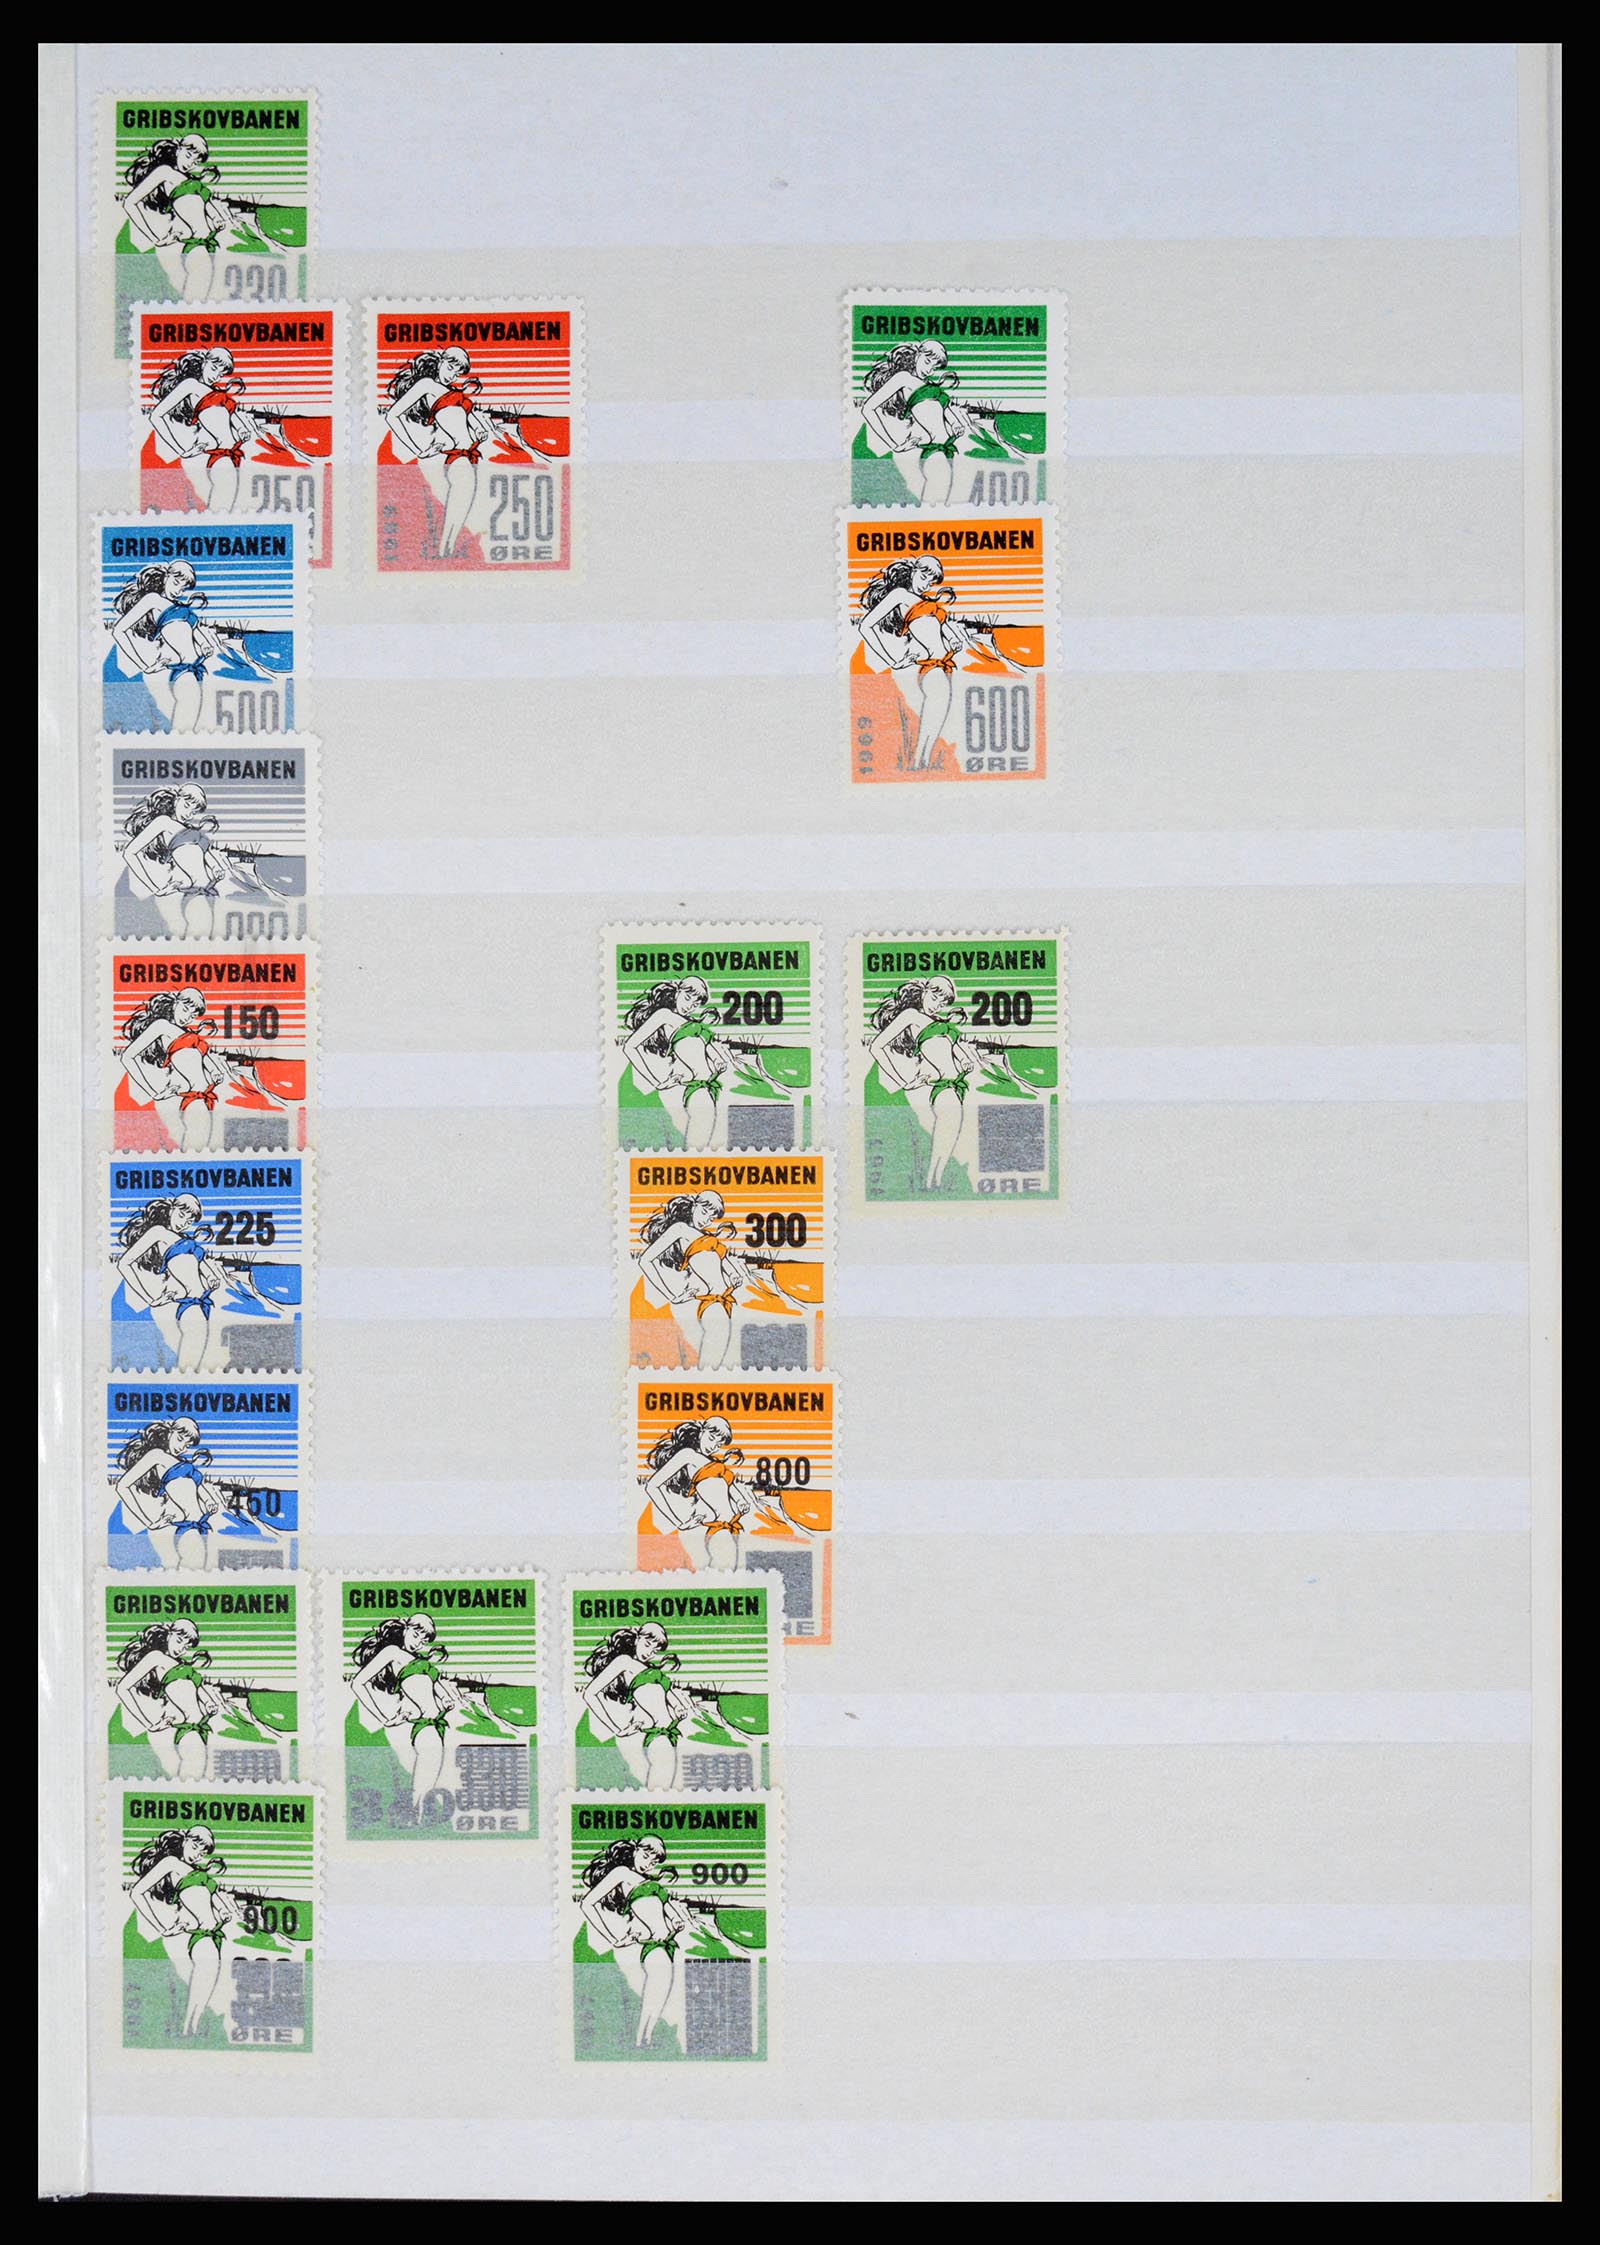 36982 019 - Postzegelverzameling 36982 Denemarken spoorwegzegels.